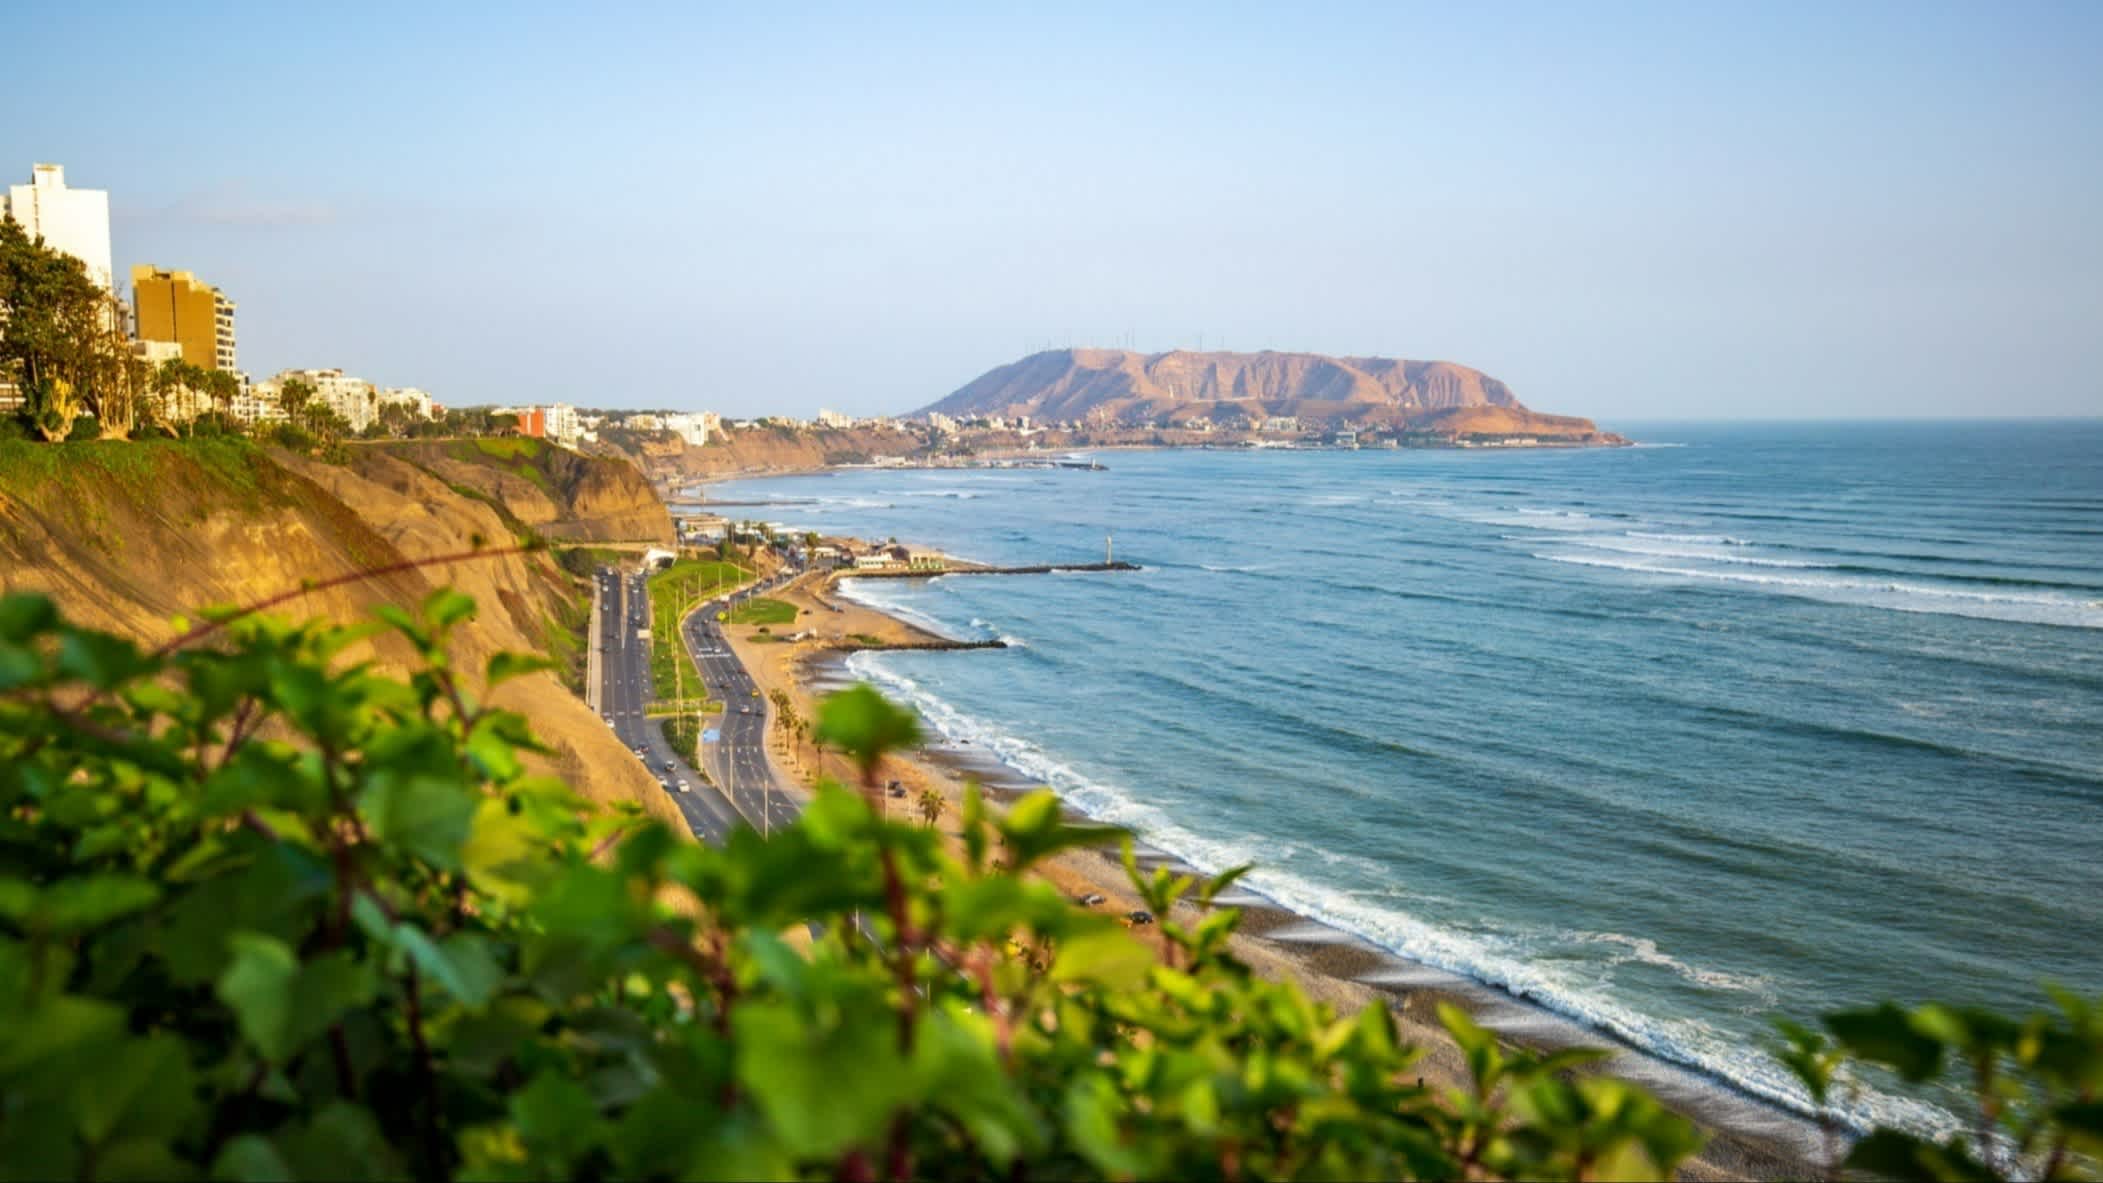 Playa Embajadores bei Lima, Peru mit Vegetation, Häusern, dem Meer sowie Bergen im Bild.